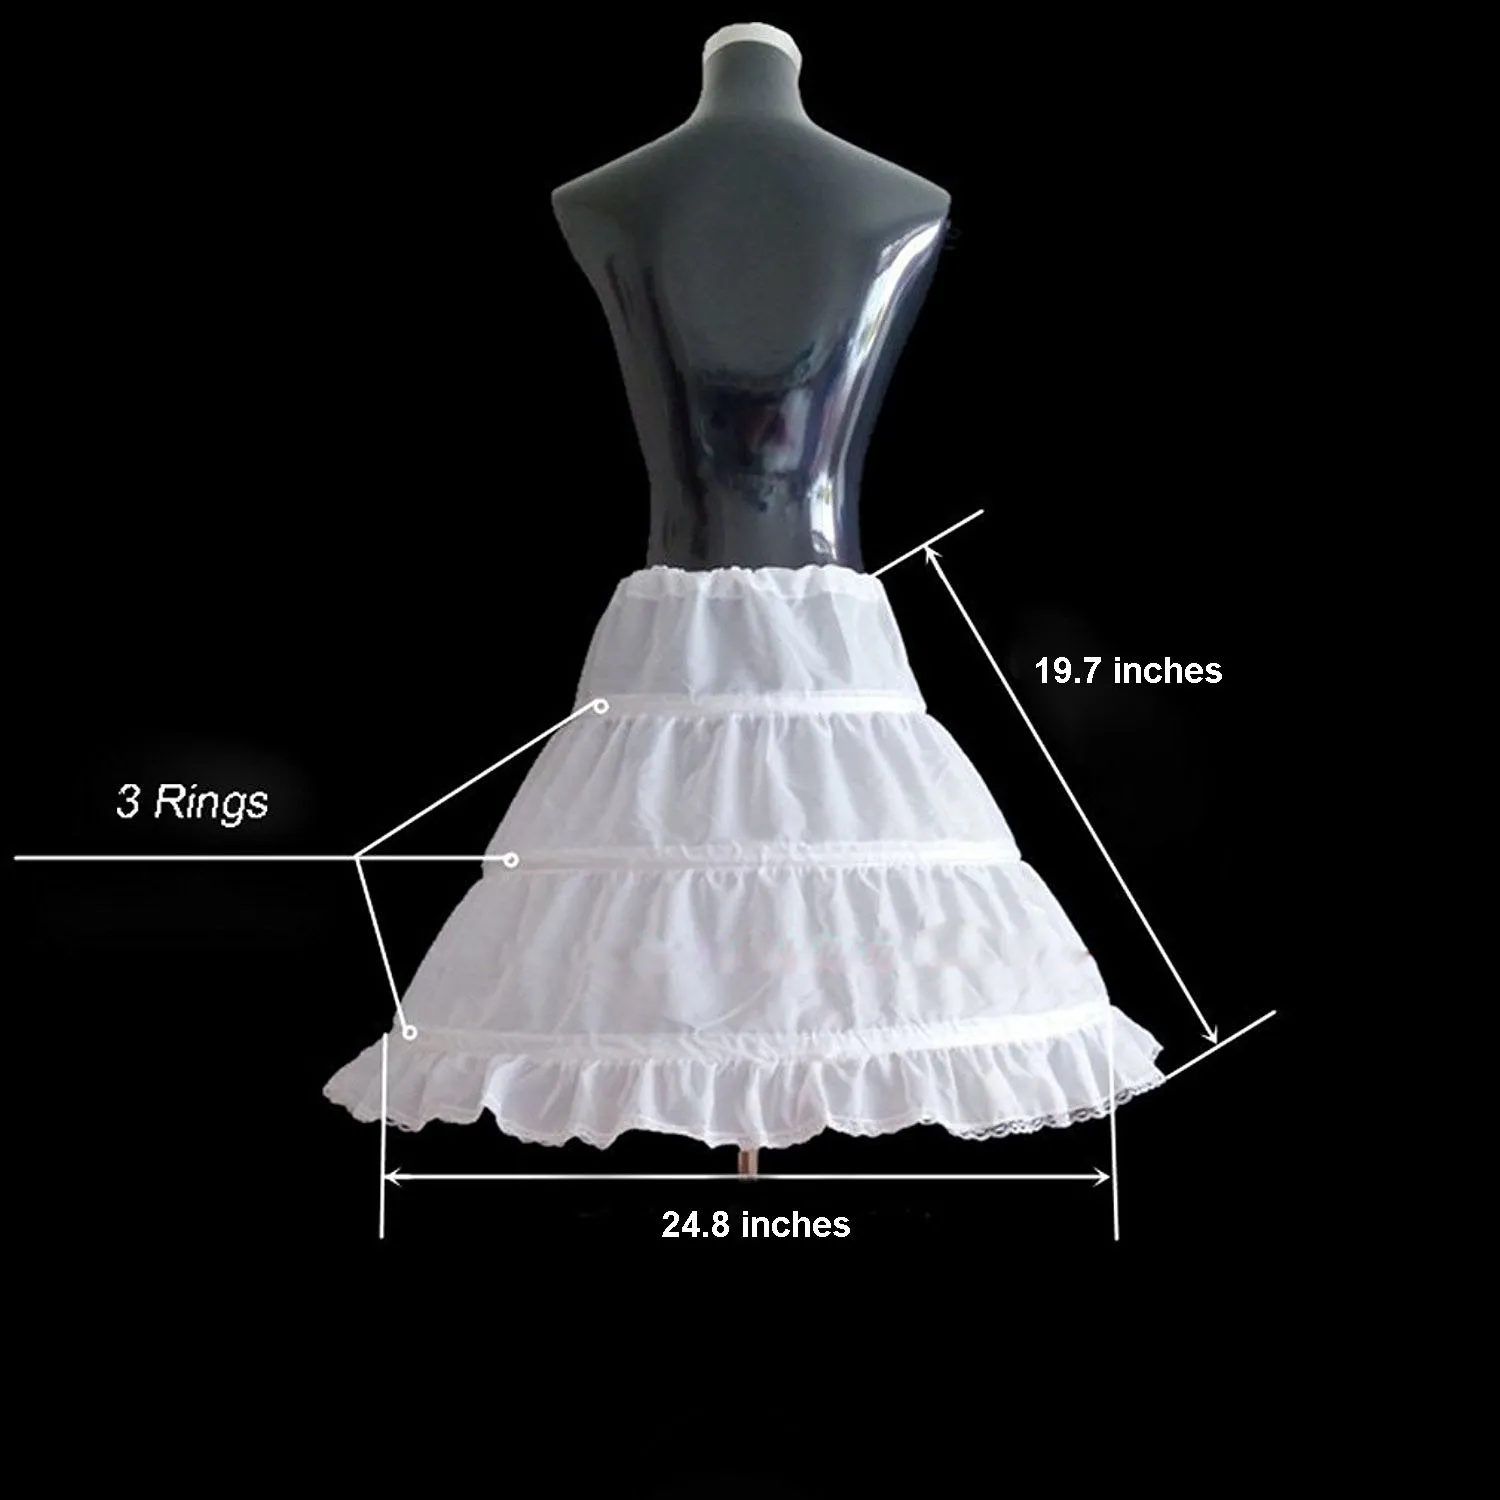 2019 Ny ankomst Aline 3 Rings Petticoat High Quality Underskirt For Wedding Children Half Slips Flower Girls Dresses Princess PE4751690